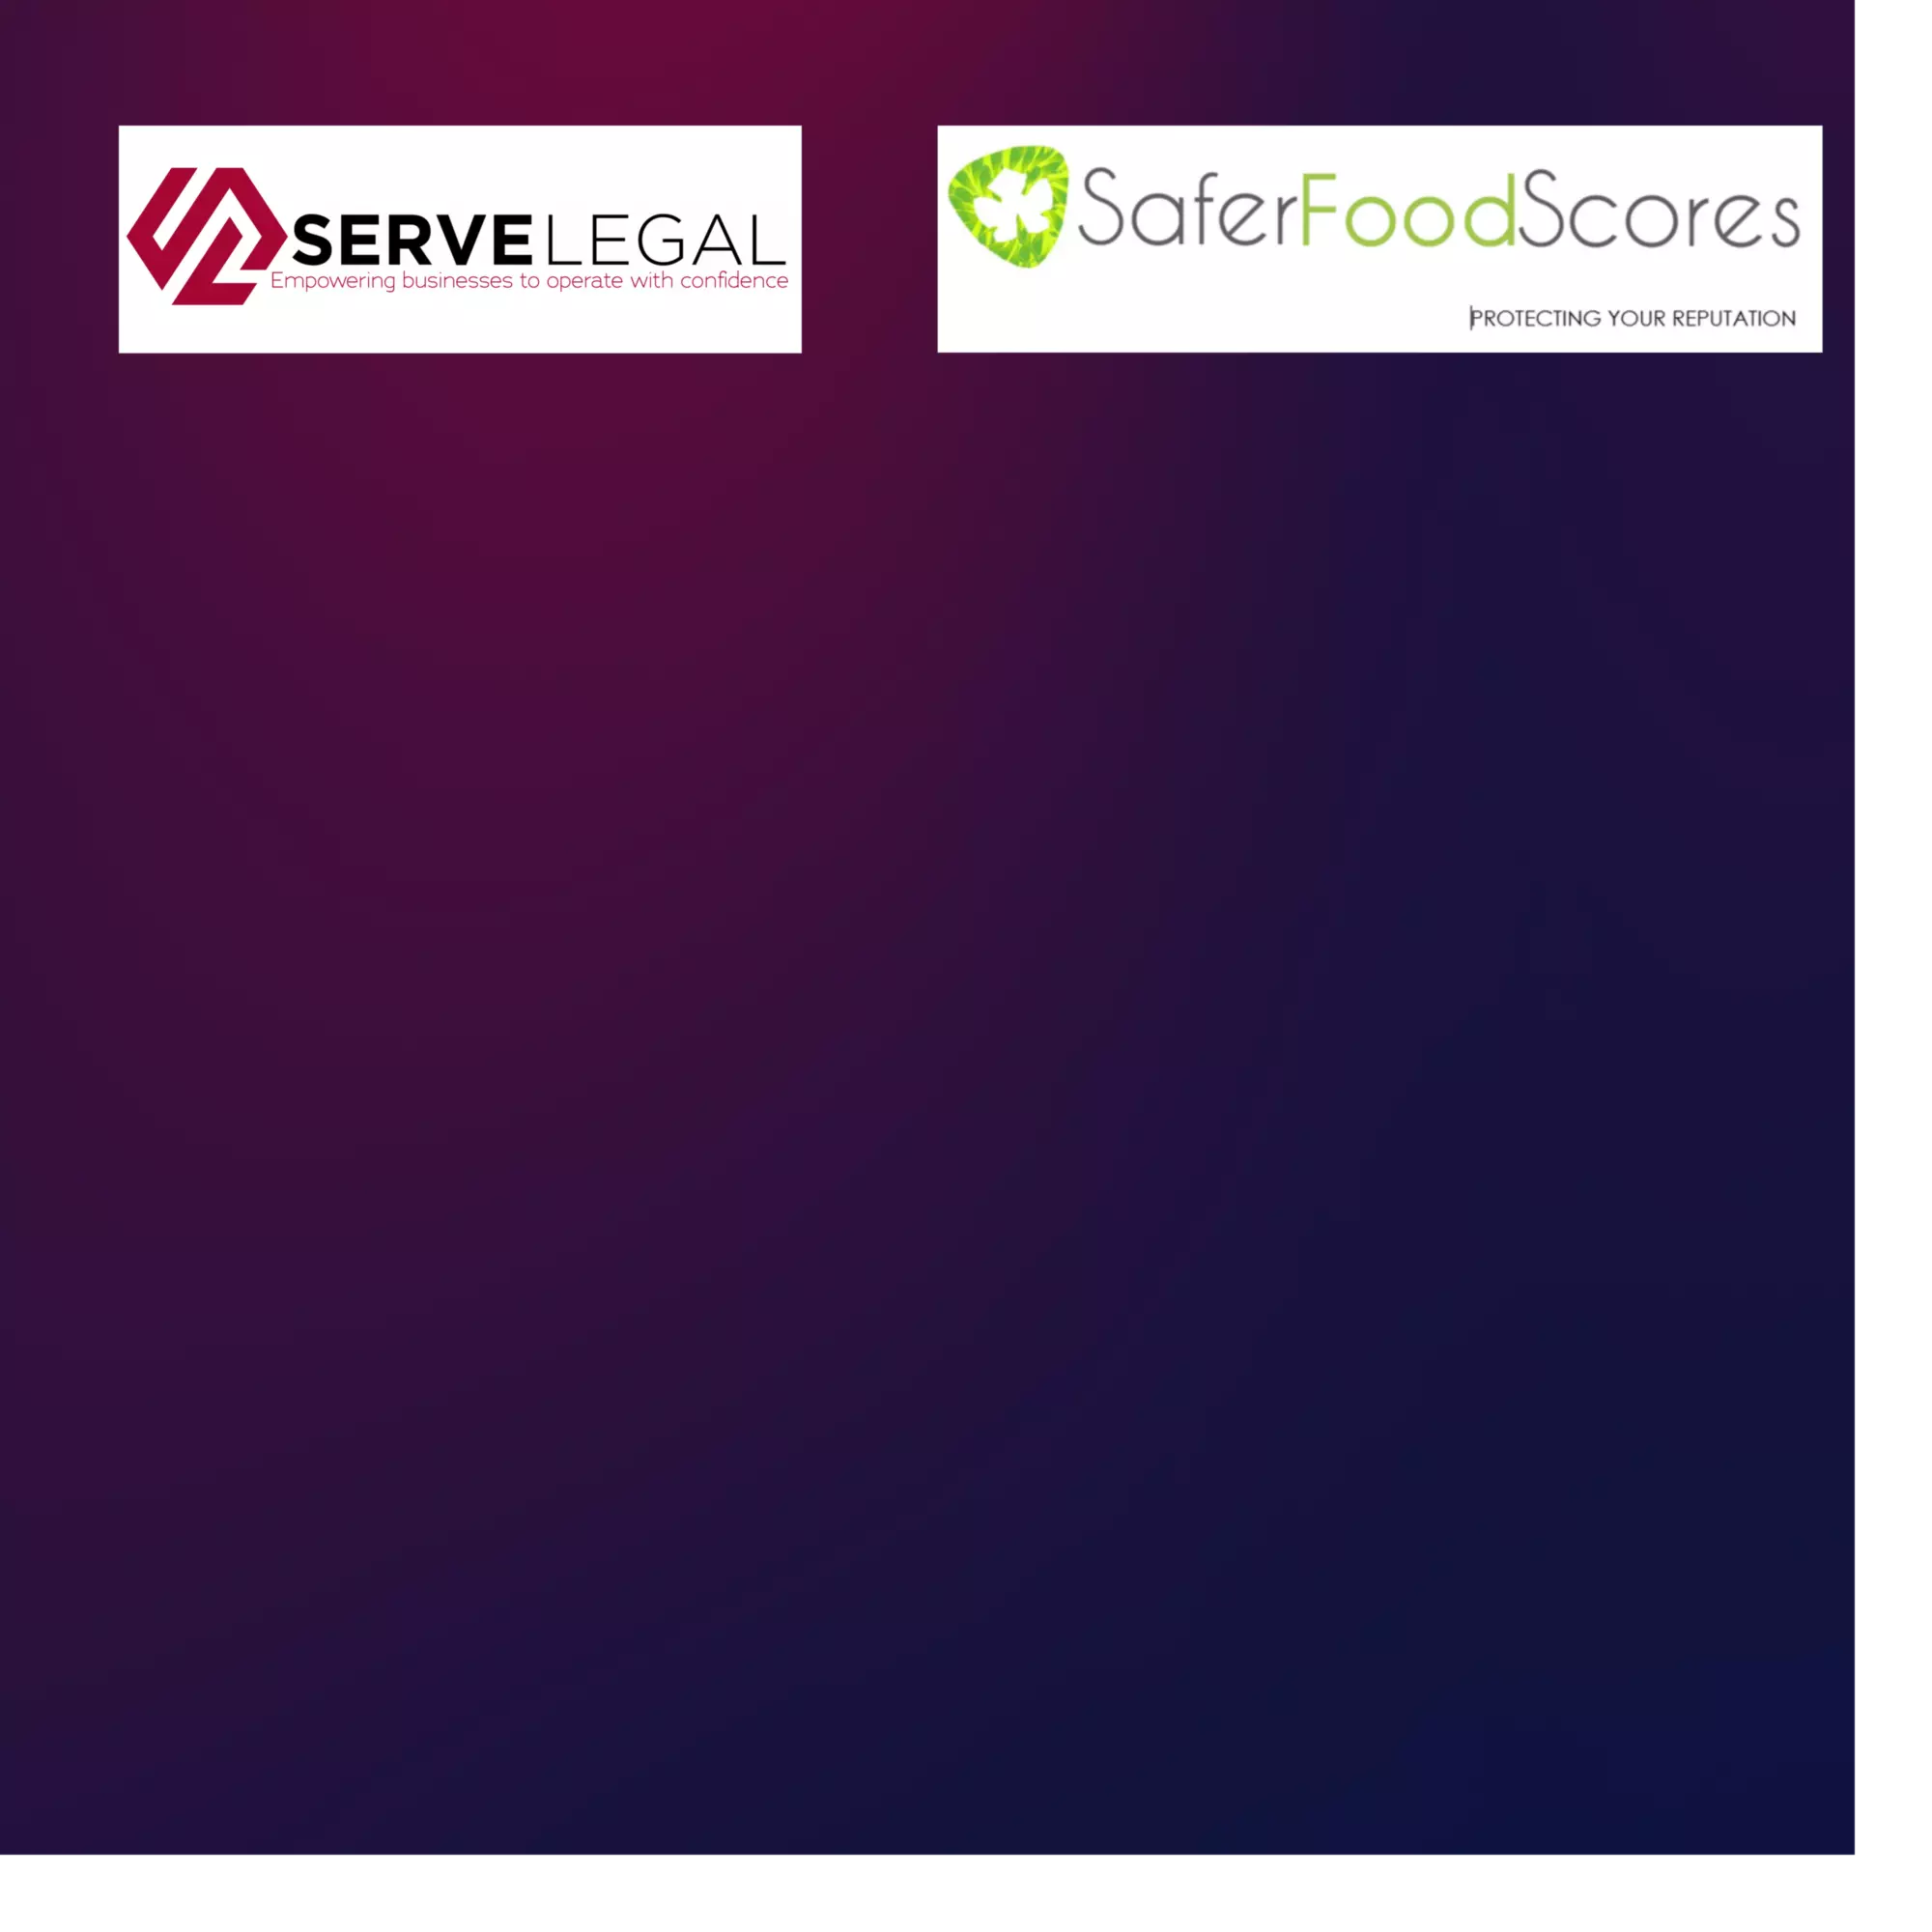 Serve Legal x Safer Food Scores Partnership